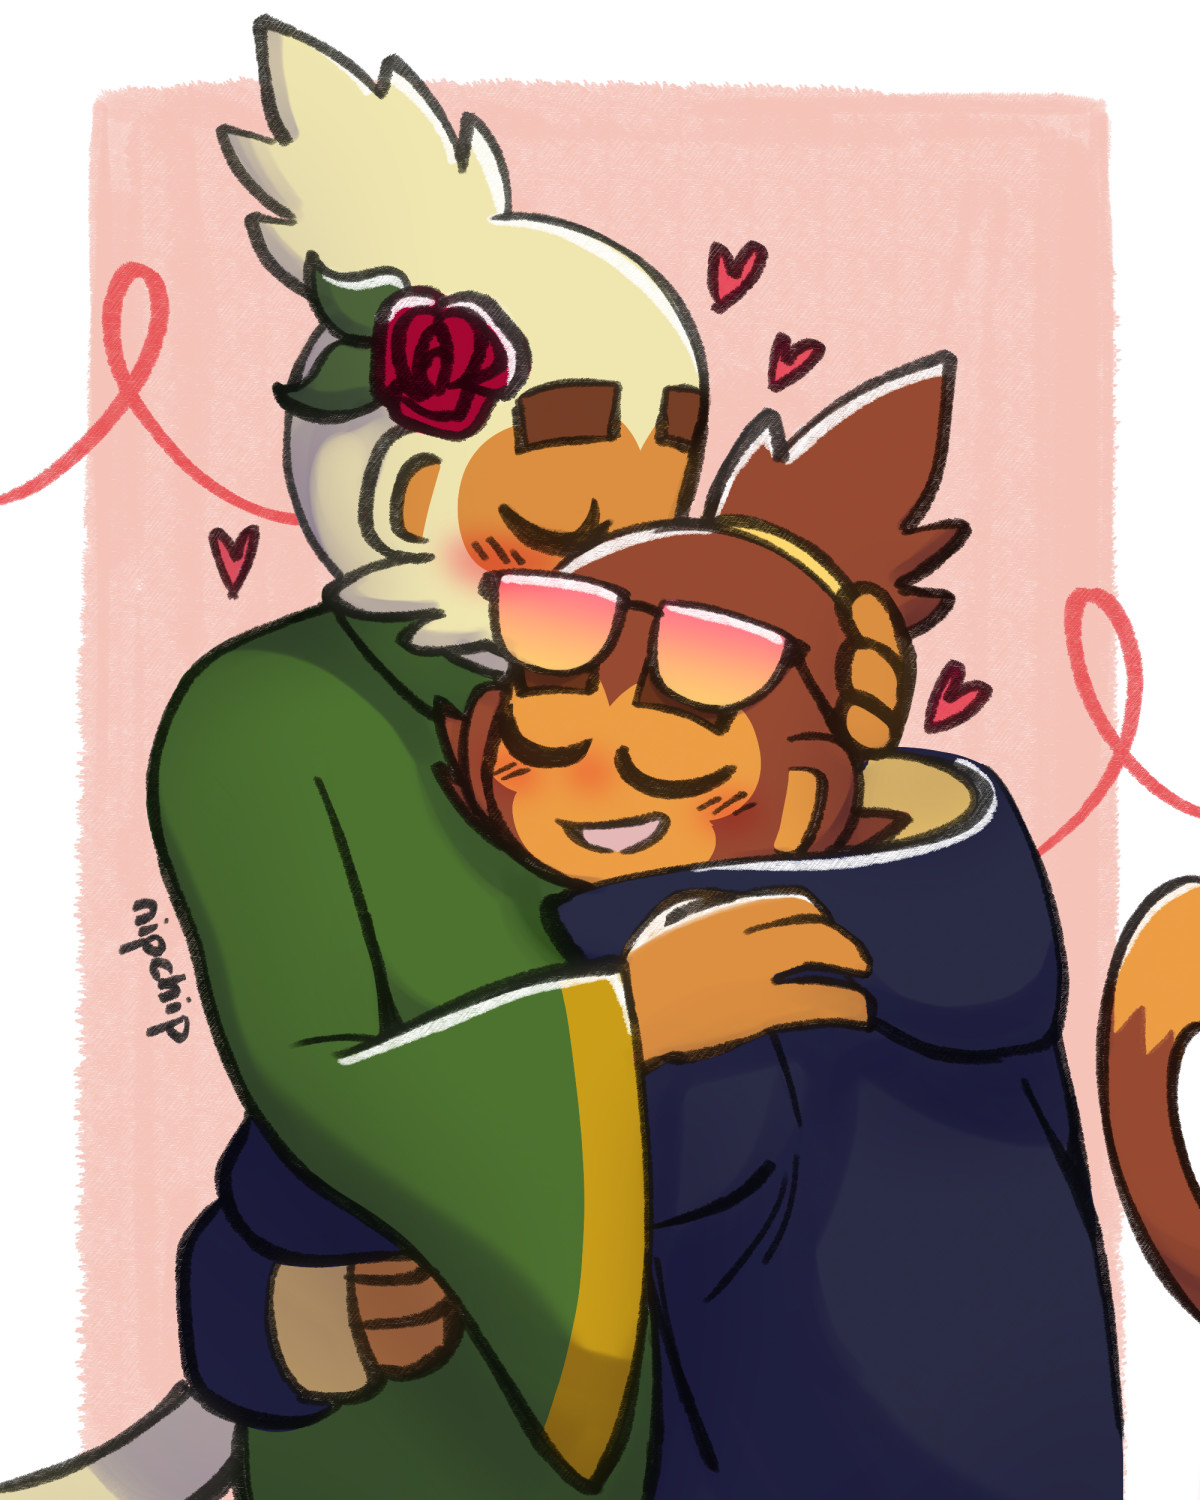 Briar and Kira embracing